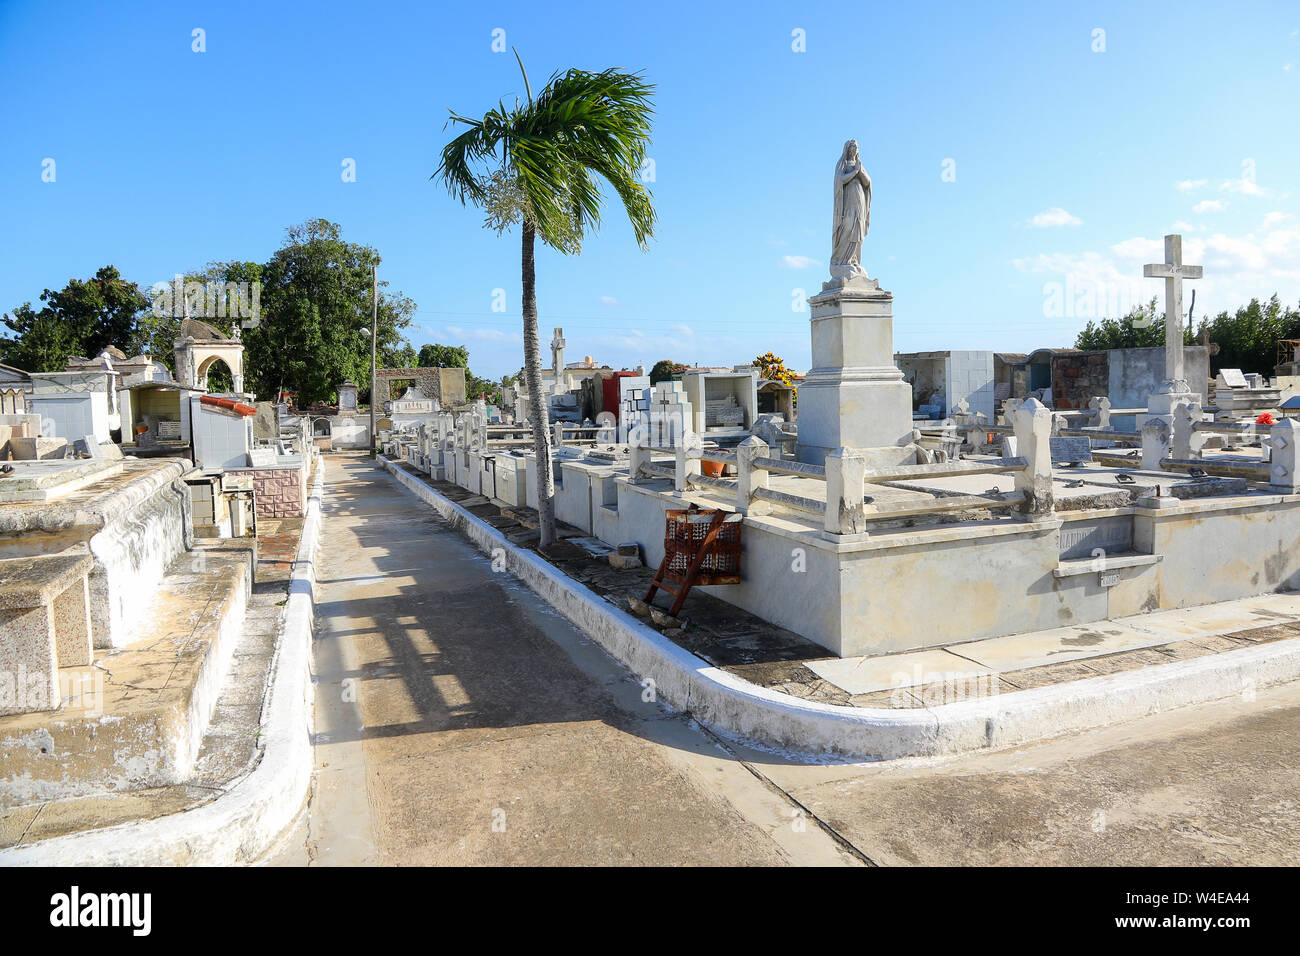 Camagüey, Cuba - Cemetery Stock Photo